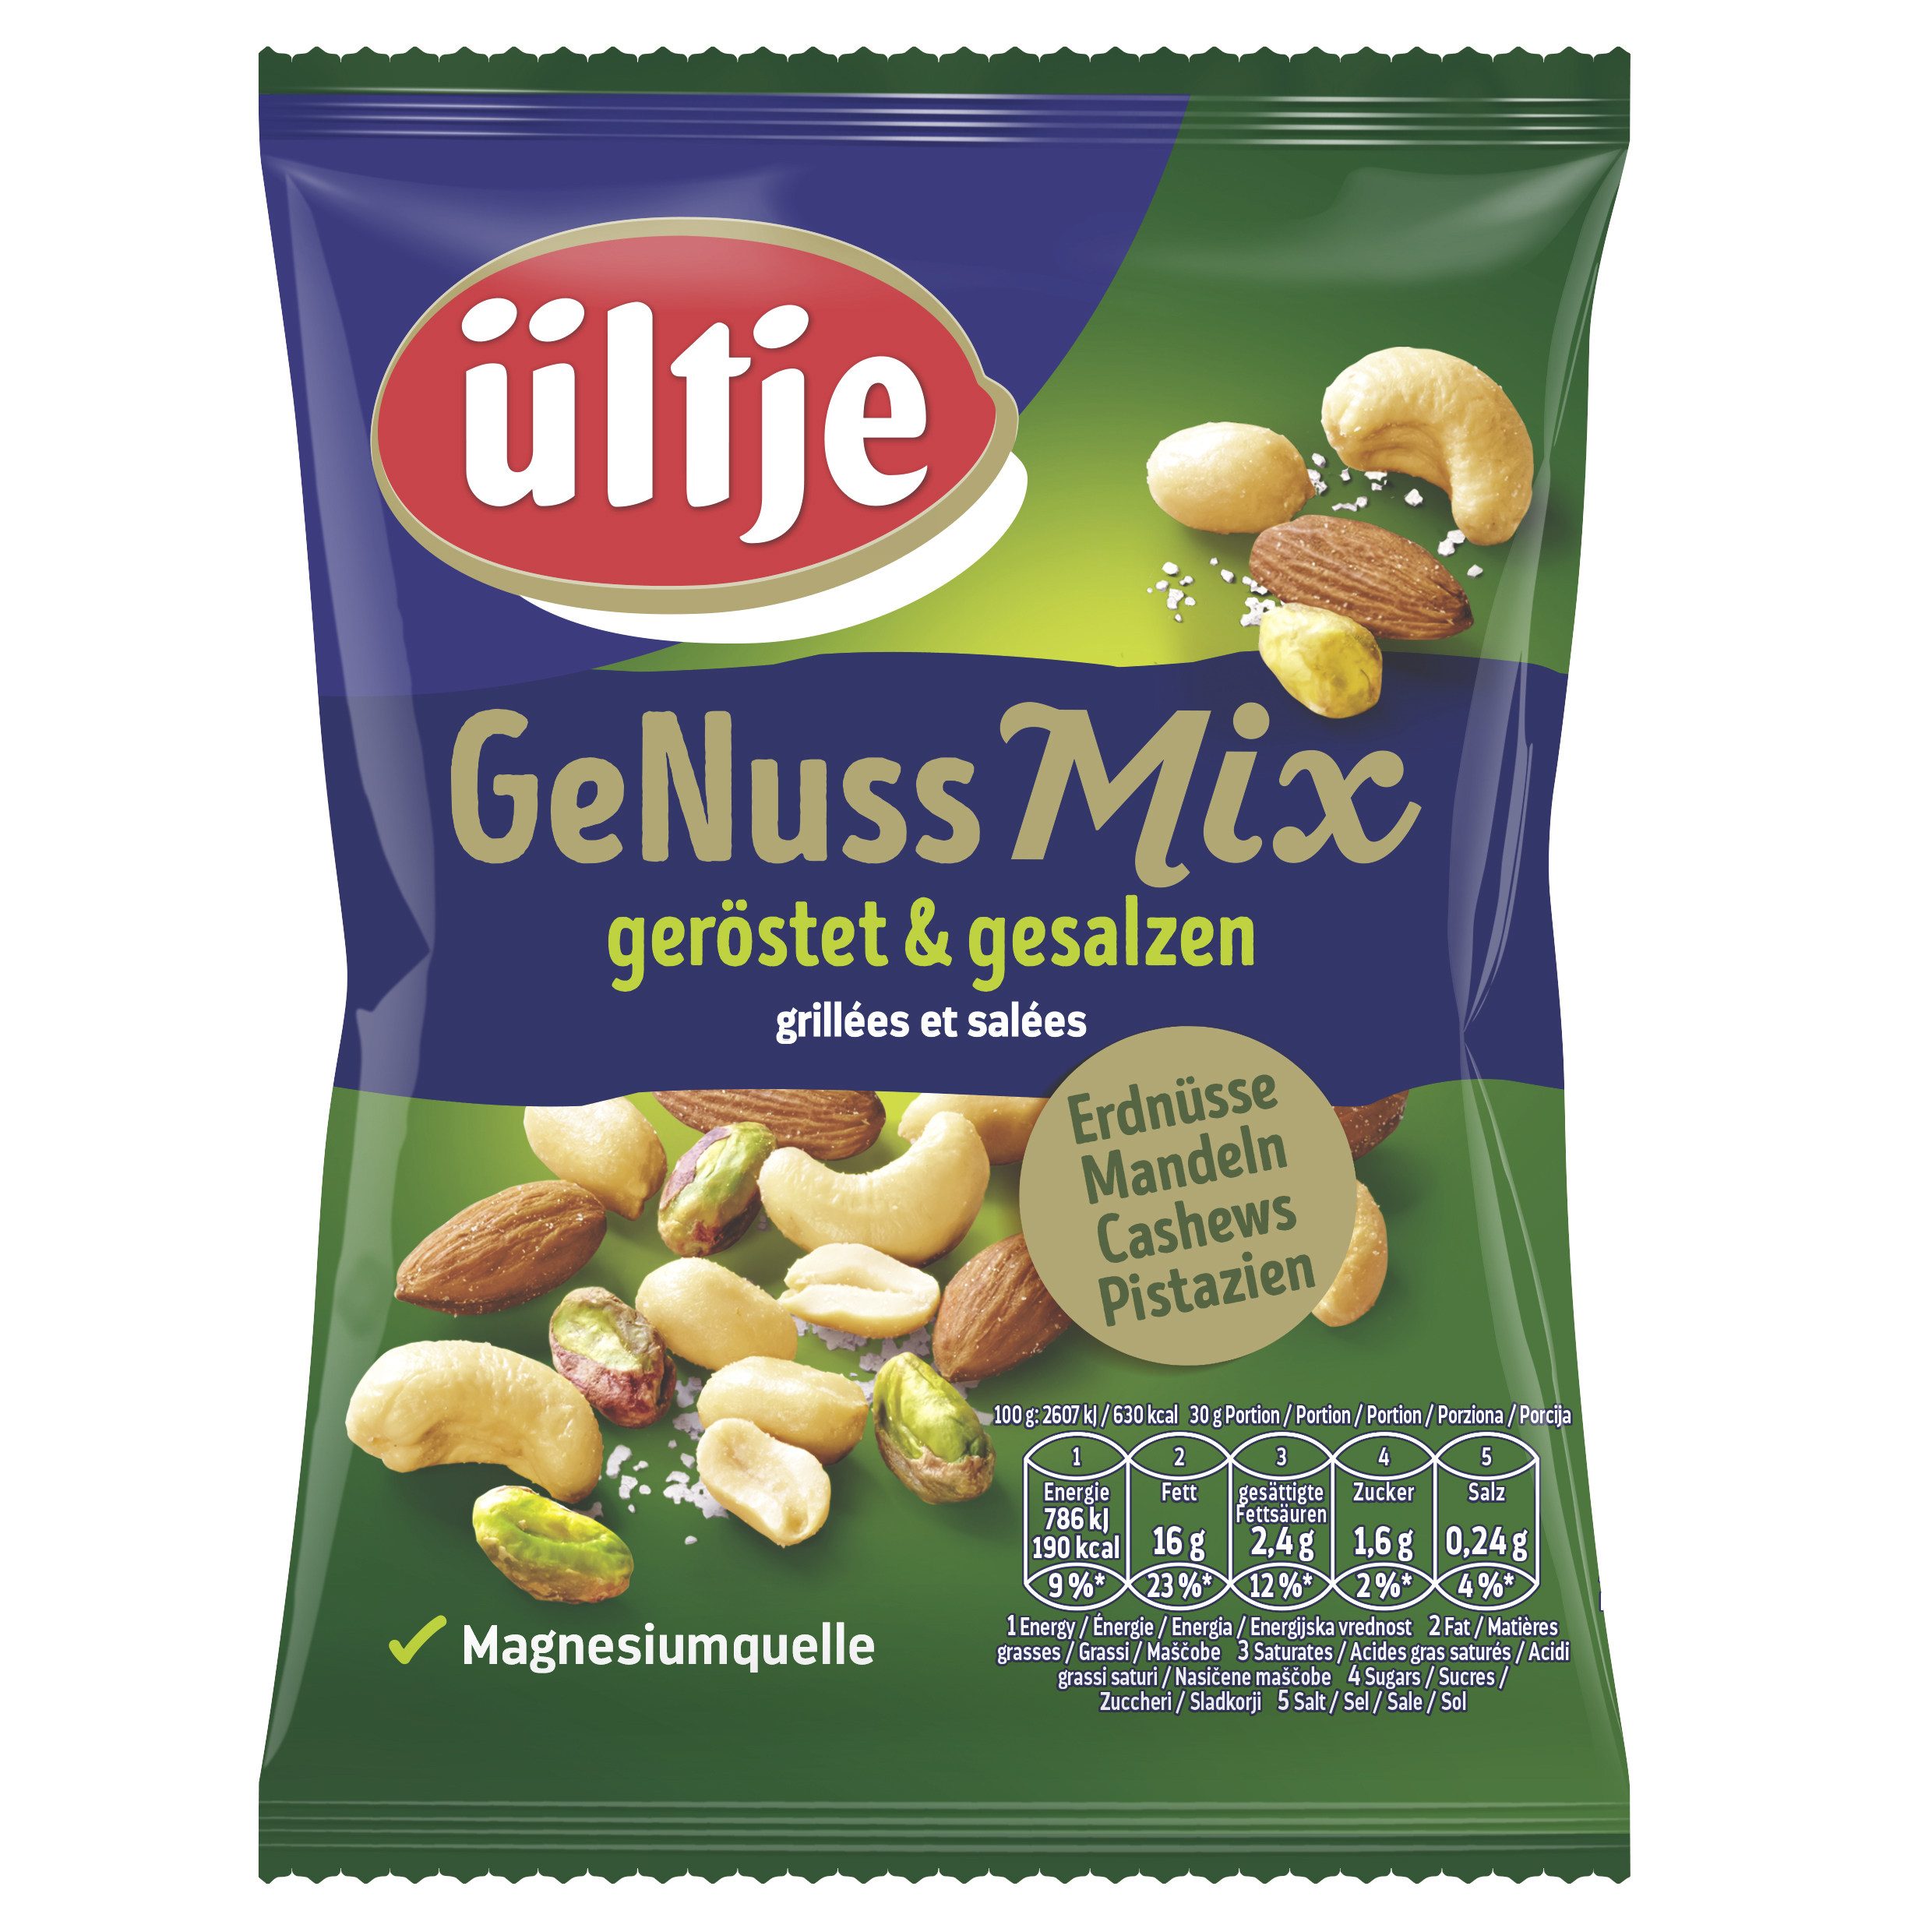 ültje GeNuss Mix, geröstet & gesalzen, 150g Beutel